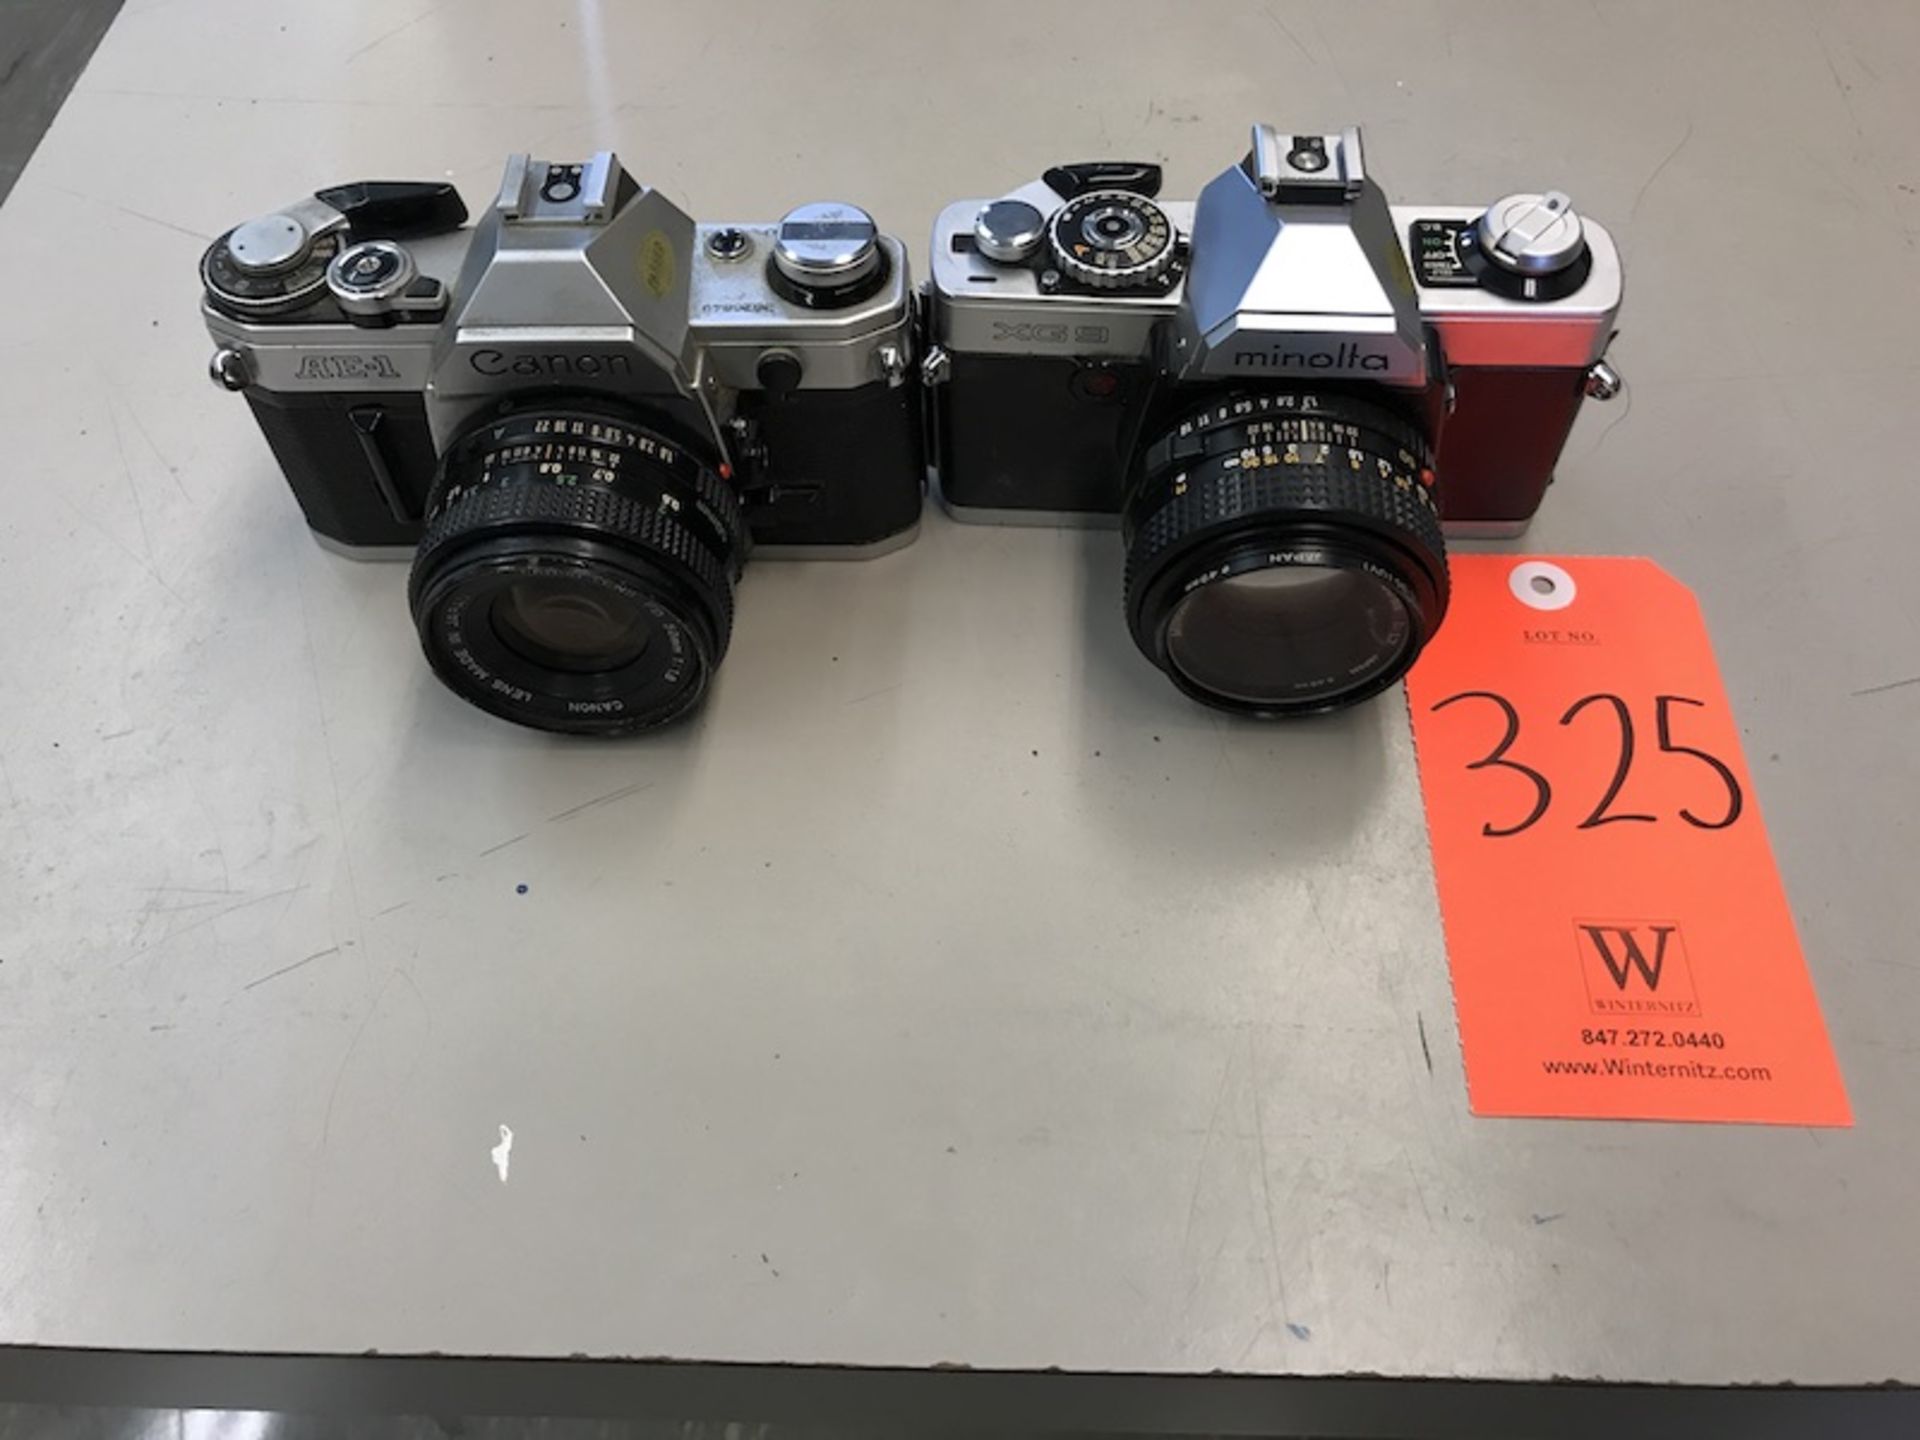 Lot - (1) Canon AE-1 Camera (1) Minolta XG9 Camera (Room 108)